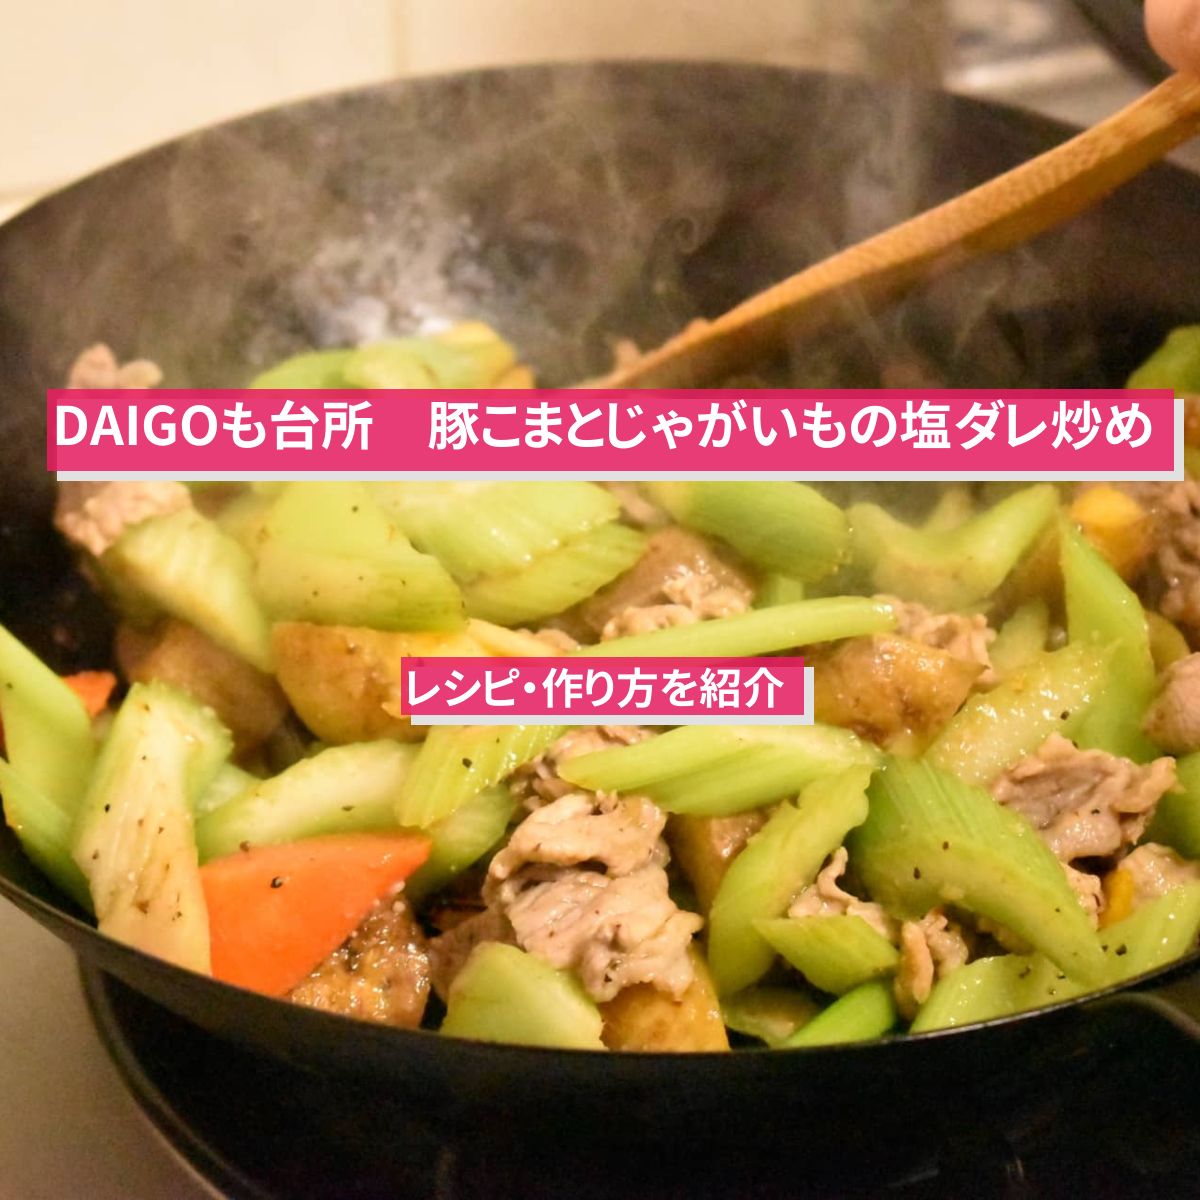 【DAIGOも台所】『豚こまとじゃがいもの塩ダレ炒め』のレシピ・作り方を紹介